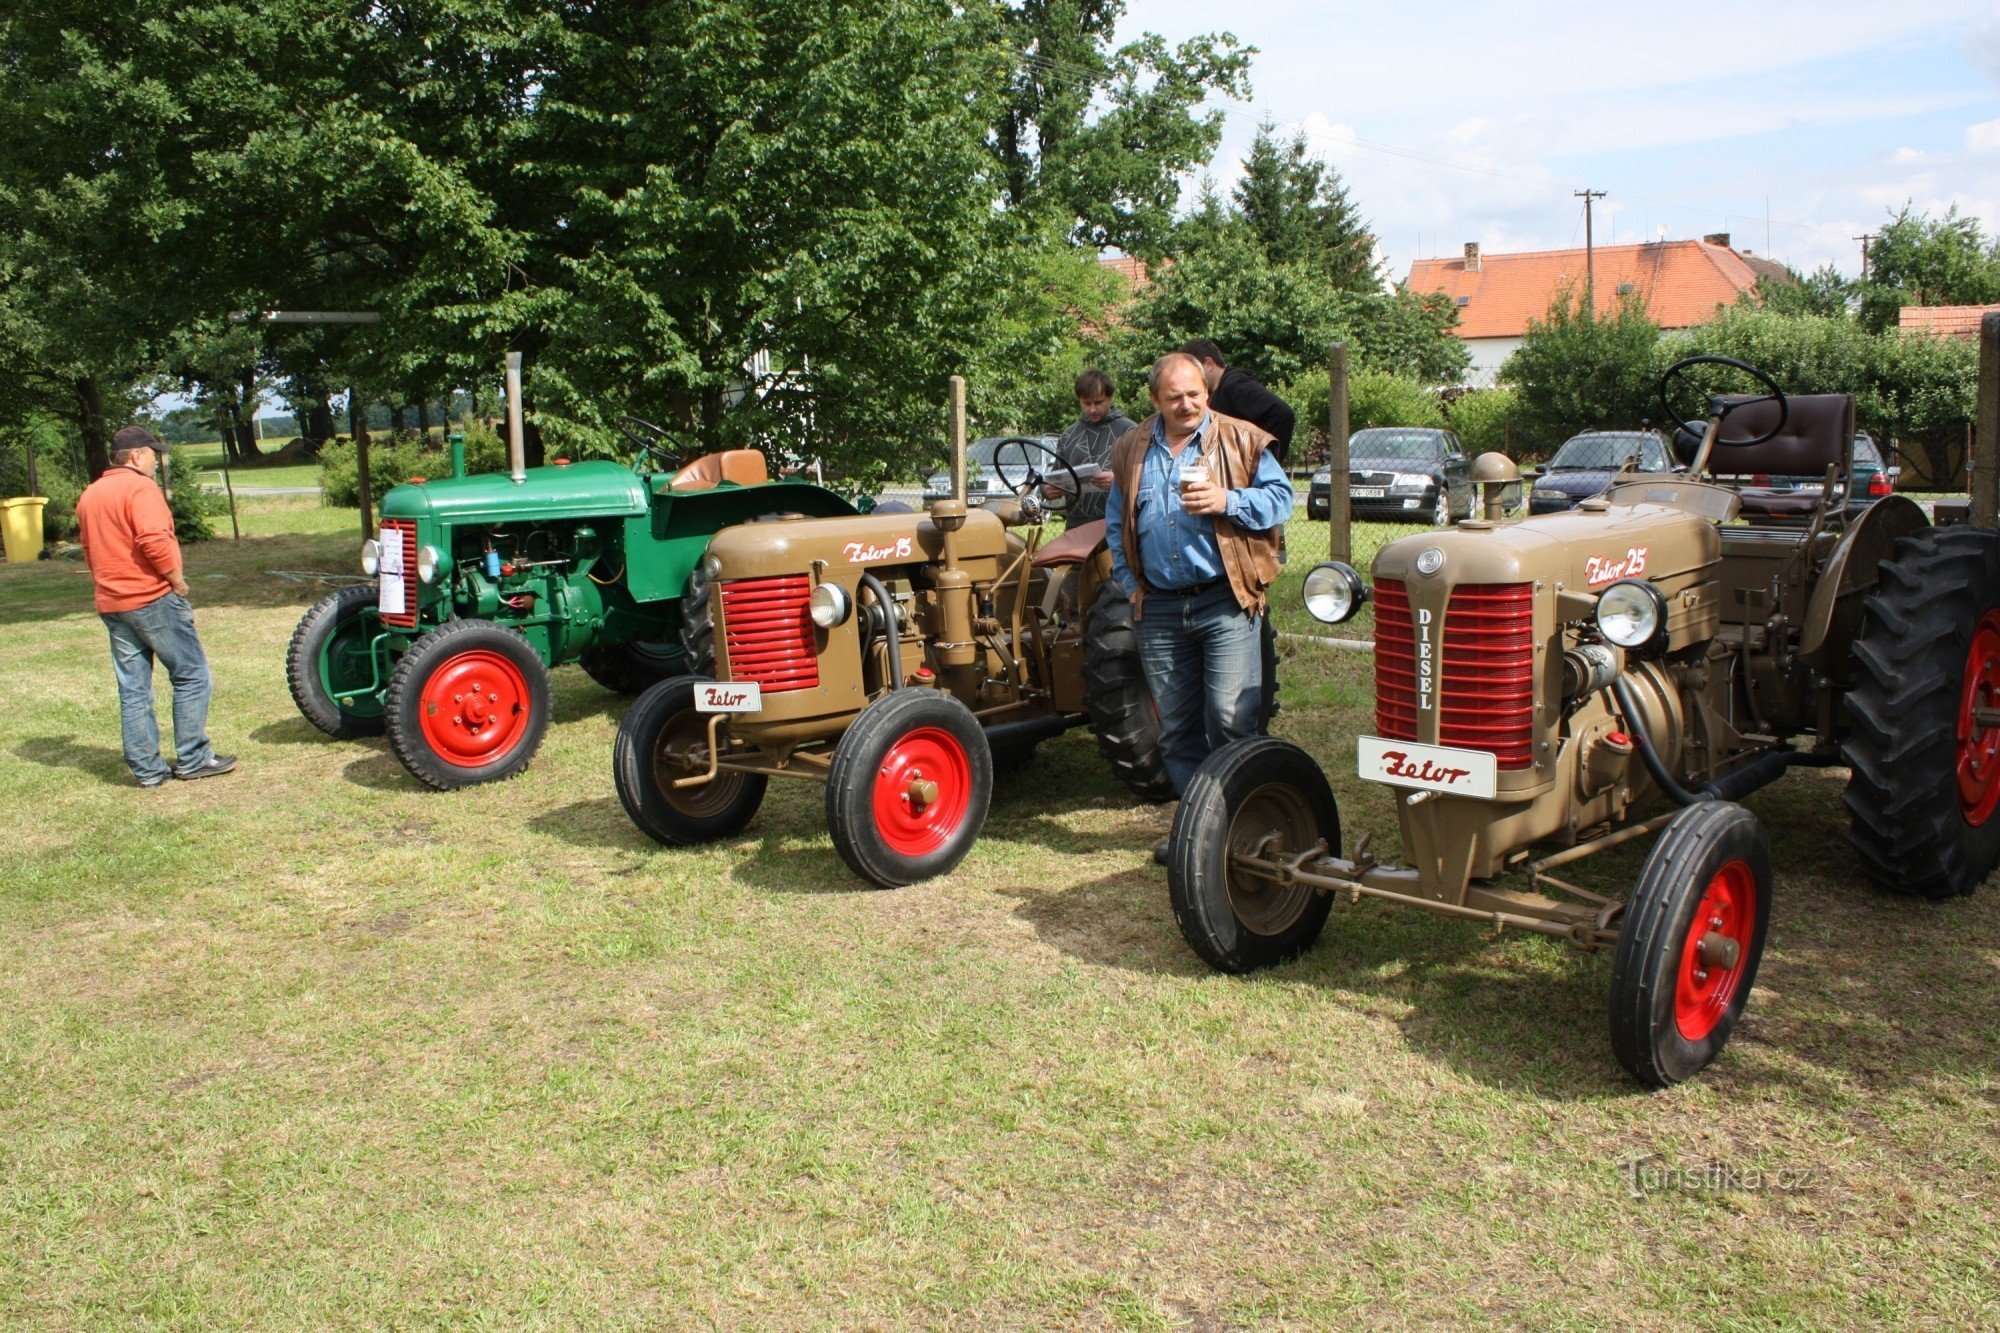 Hr. Václav Brožeks traktorer ved Němčice-mødet i landsbyen Němčice nær Netolic